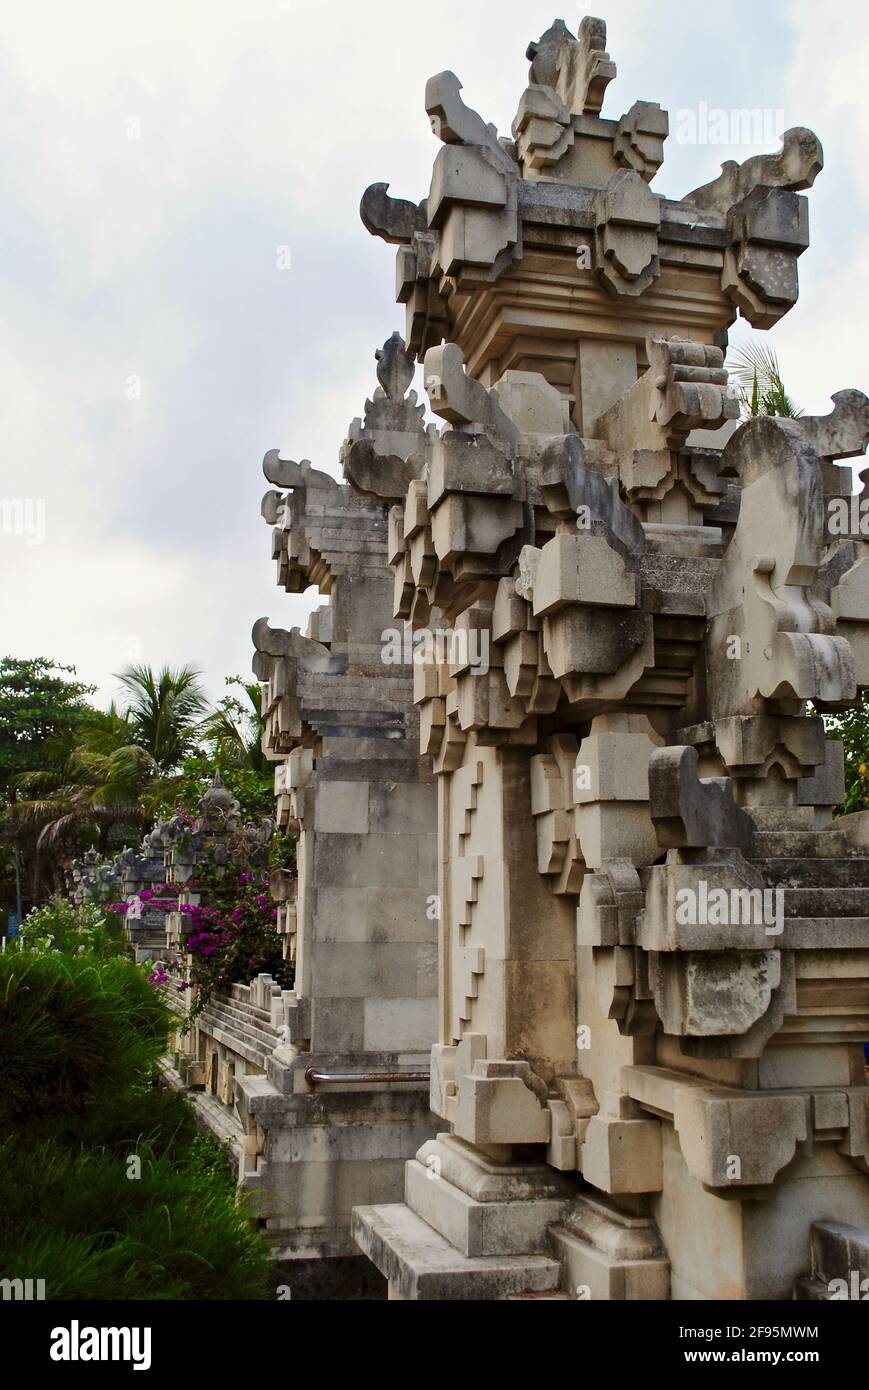 Parete e cancello decorativi della spiaggia a Kuta, Bali, Indonesia. La caratteristica decorativa controlla l'erosione della spiaggia ed evoca la tradizionale architettura Balinese. Foto Stock